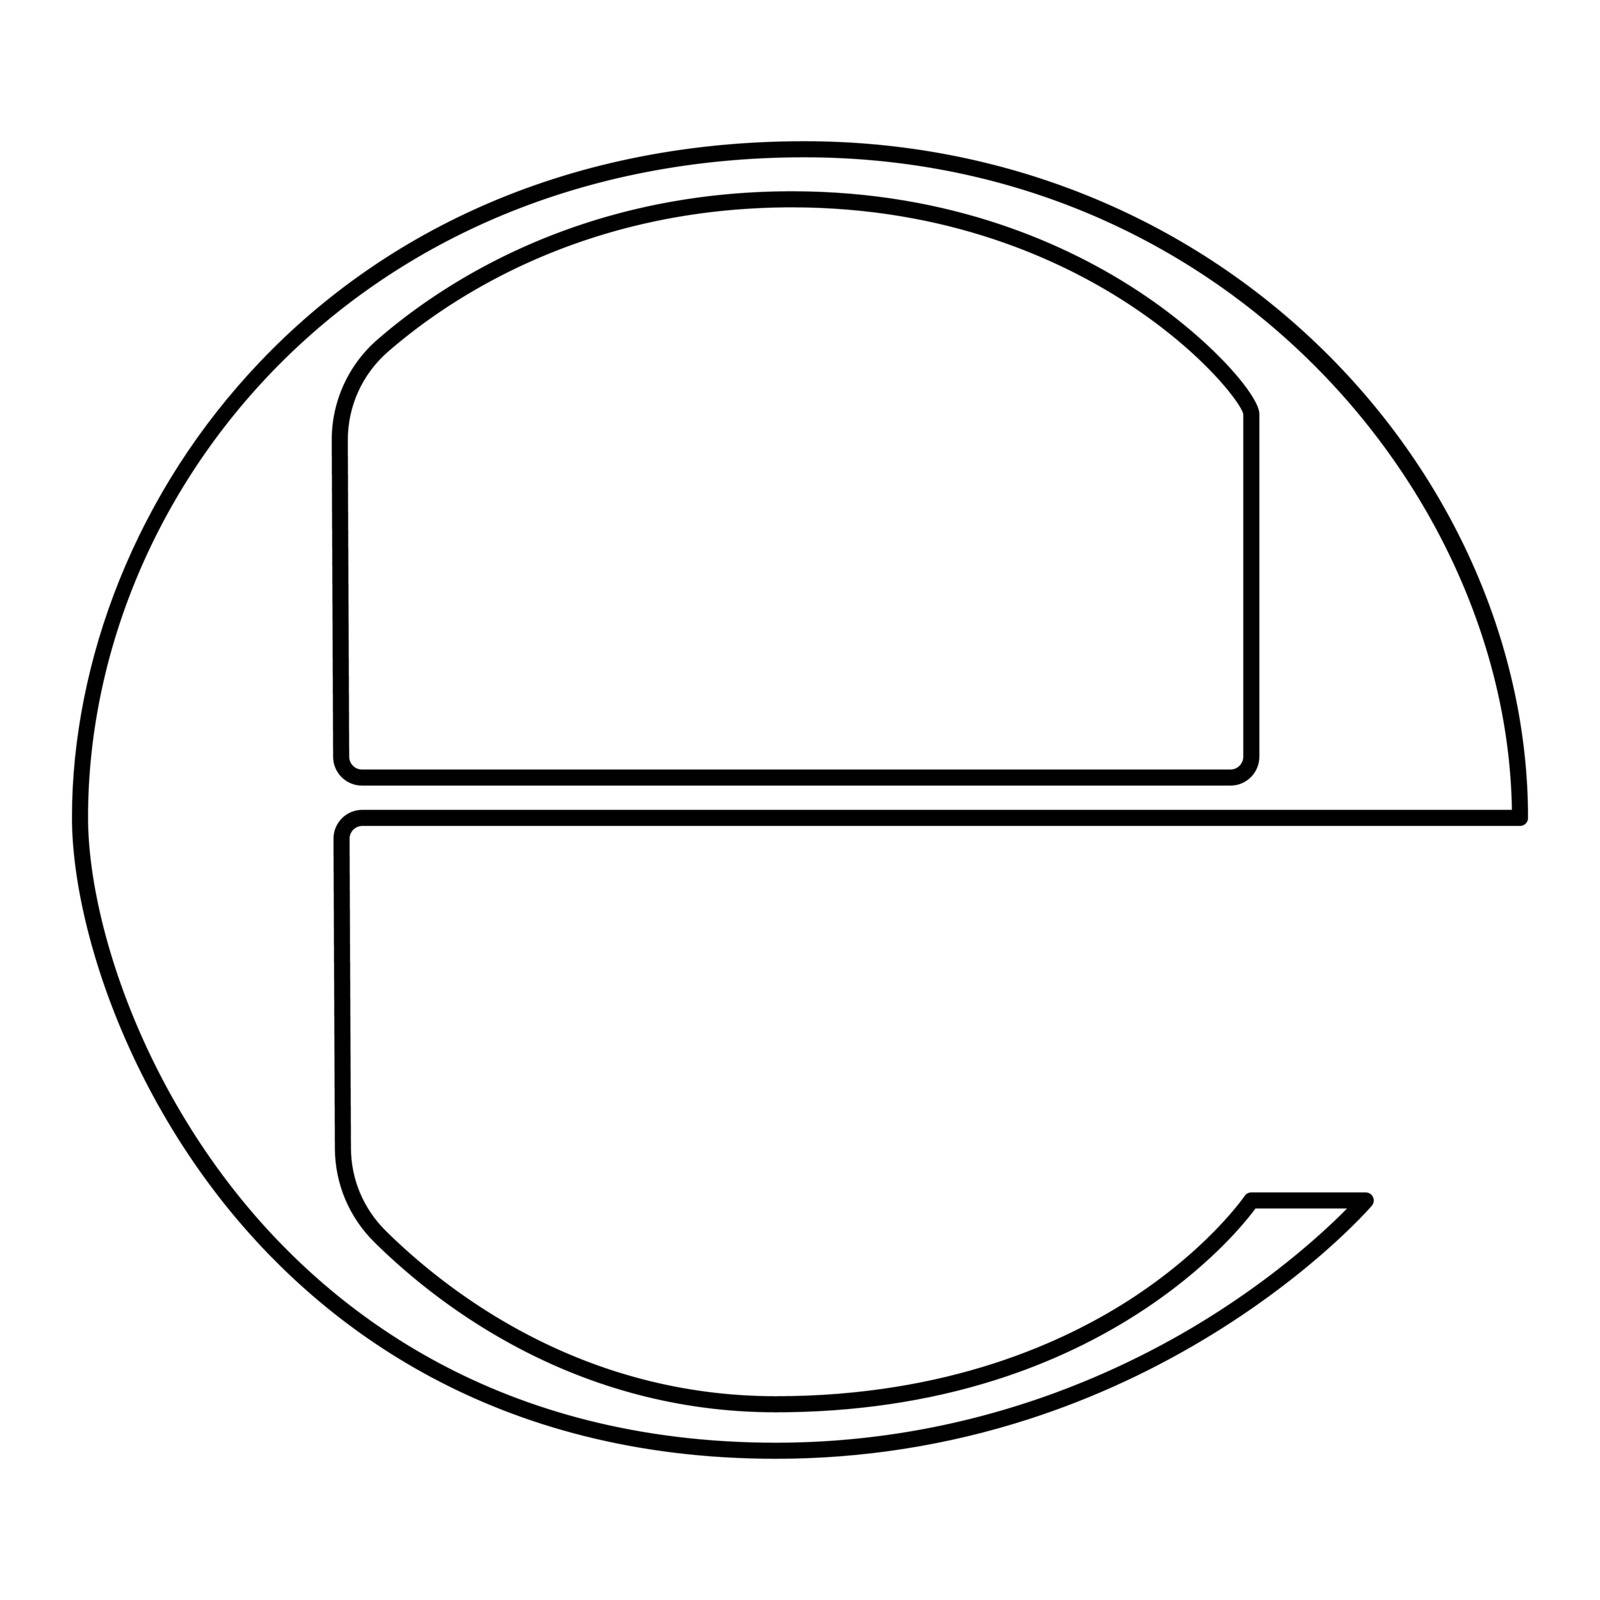 Estimated sign E mark symbol e icon black color by serhii435